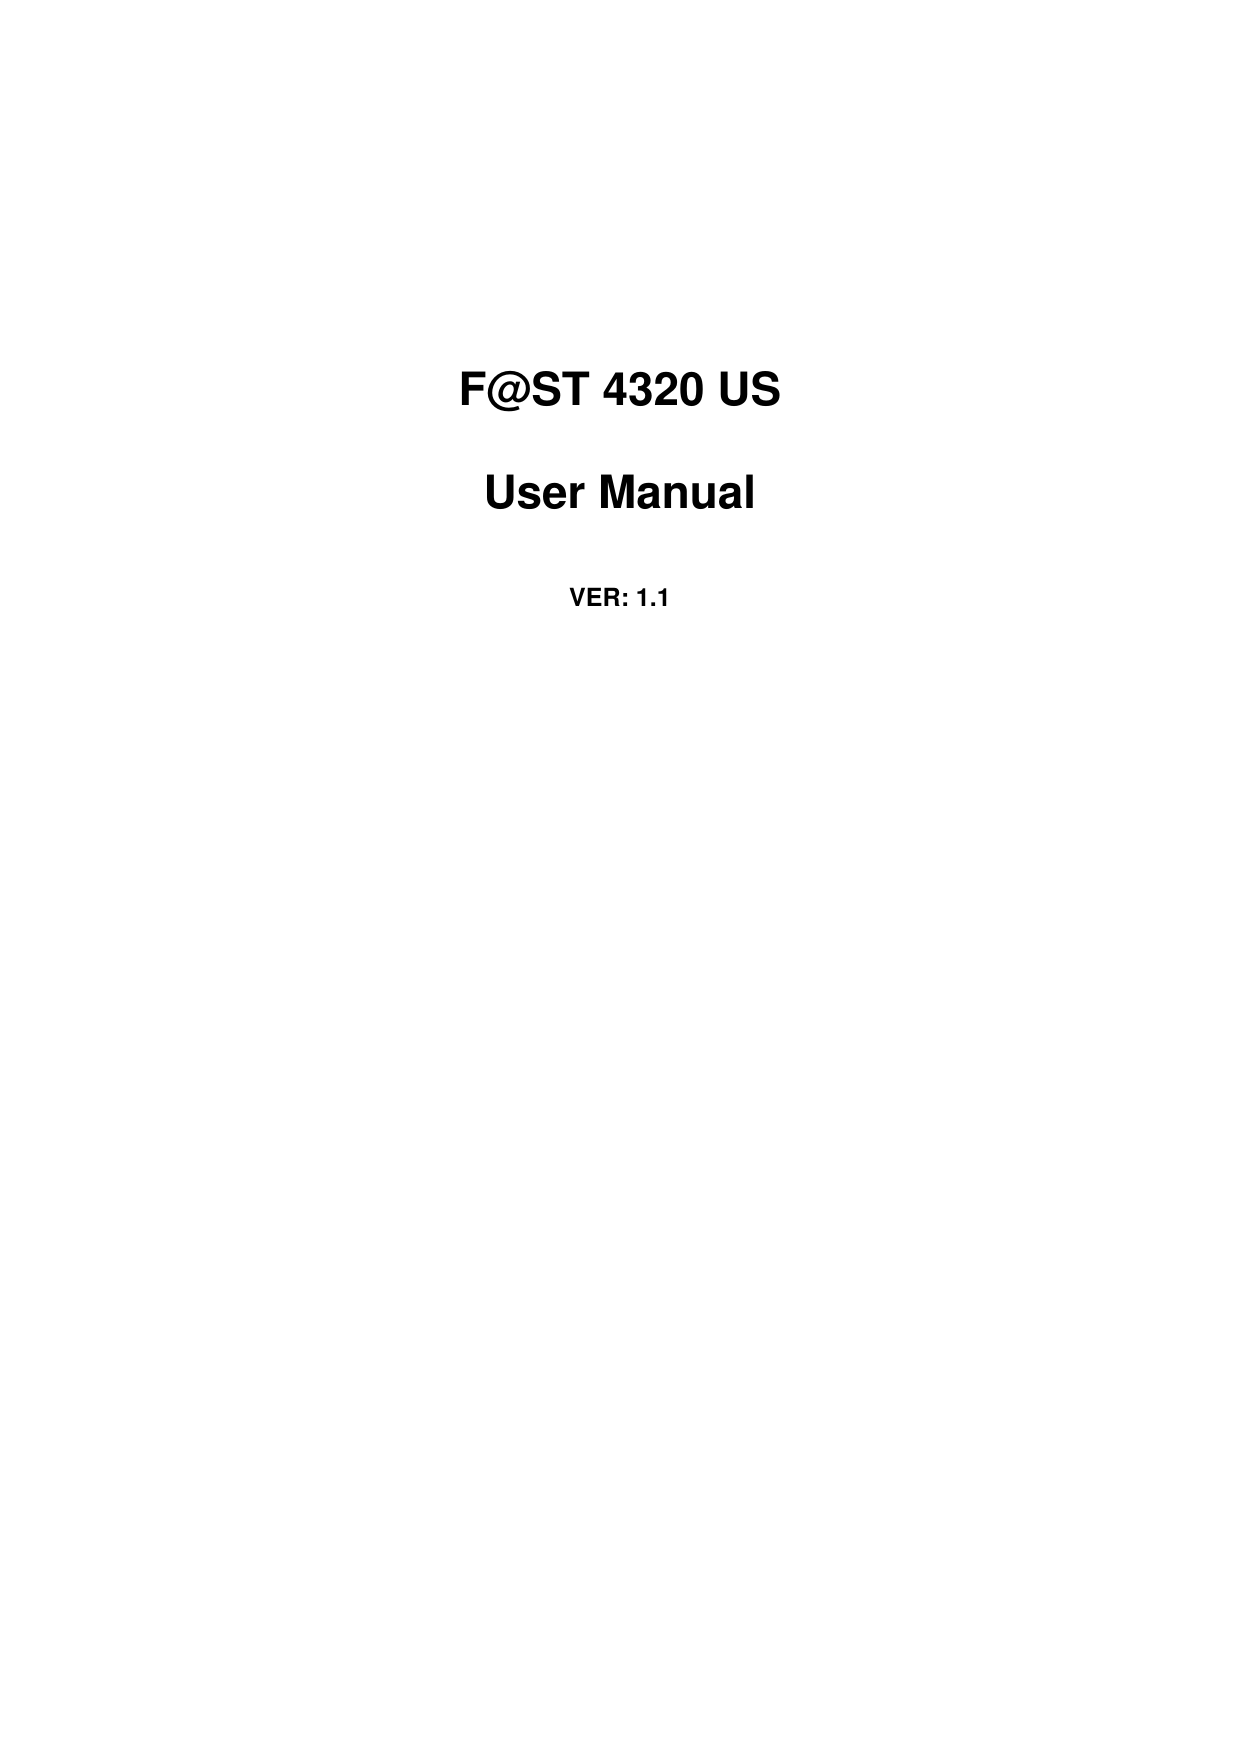      F@ST 4320 US User Manual   VER: 1.1 